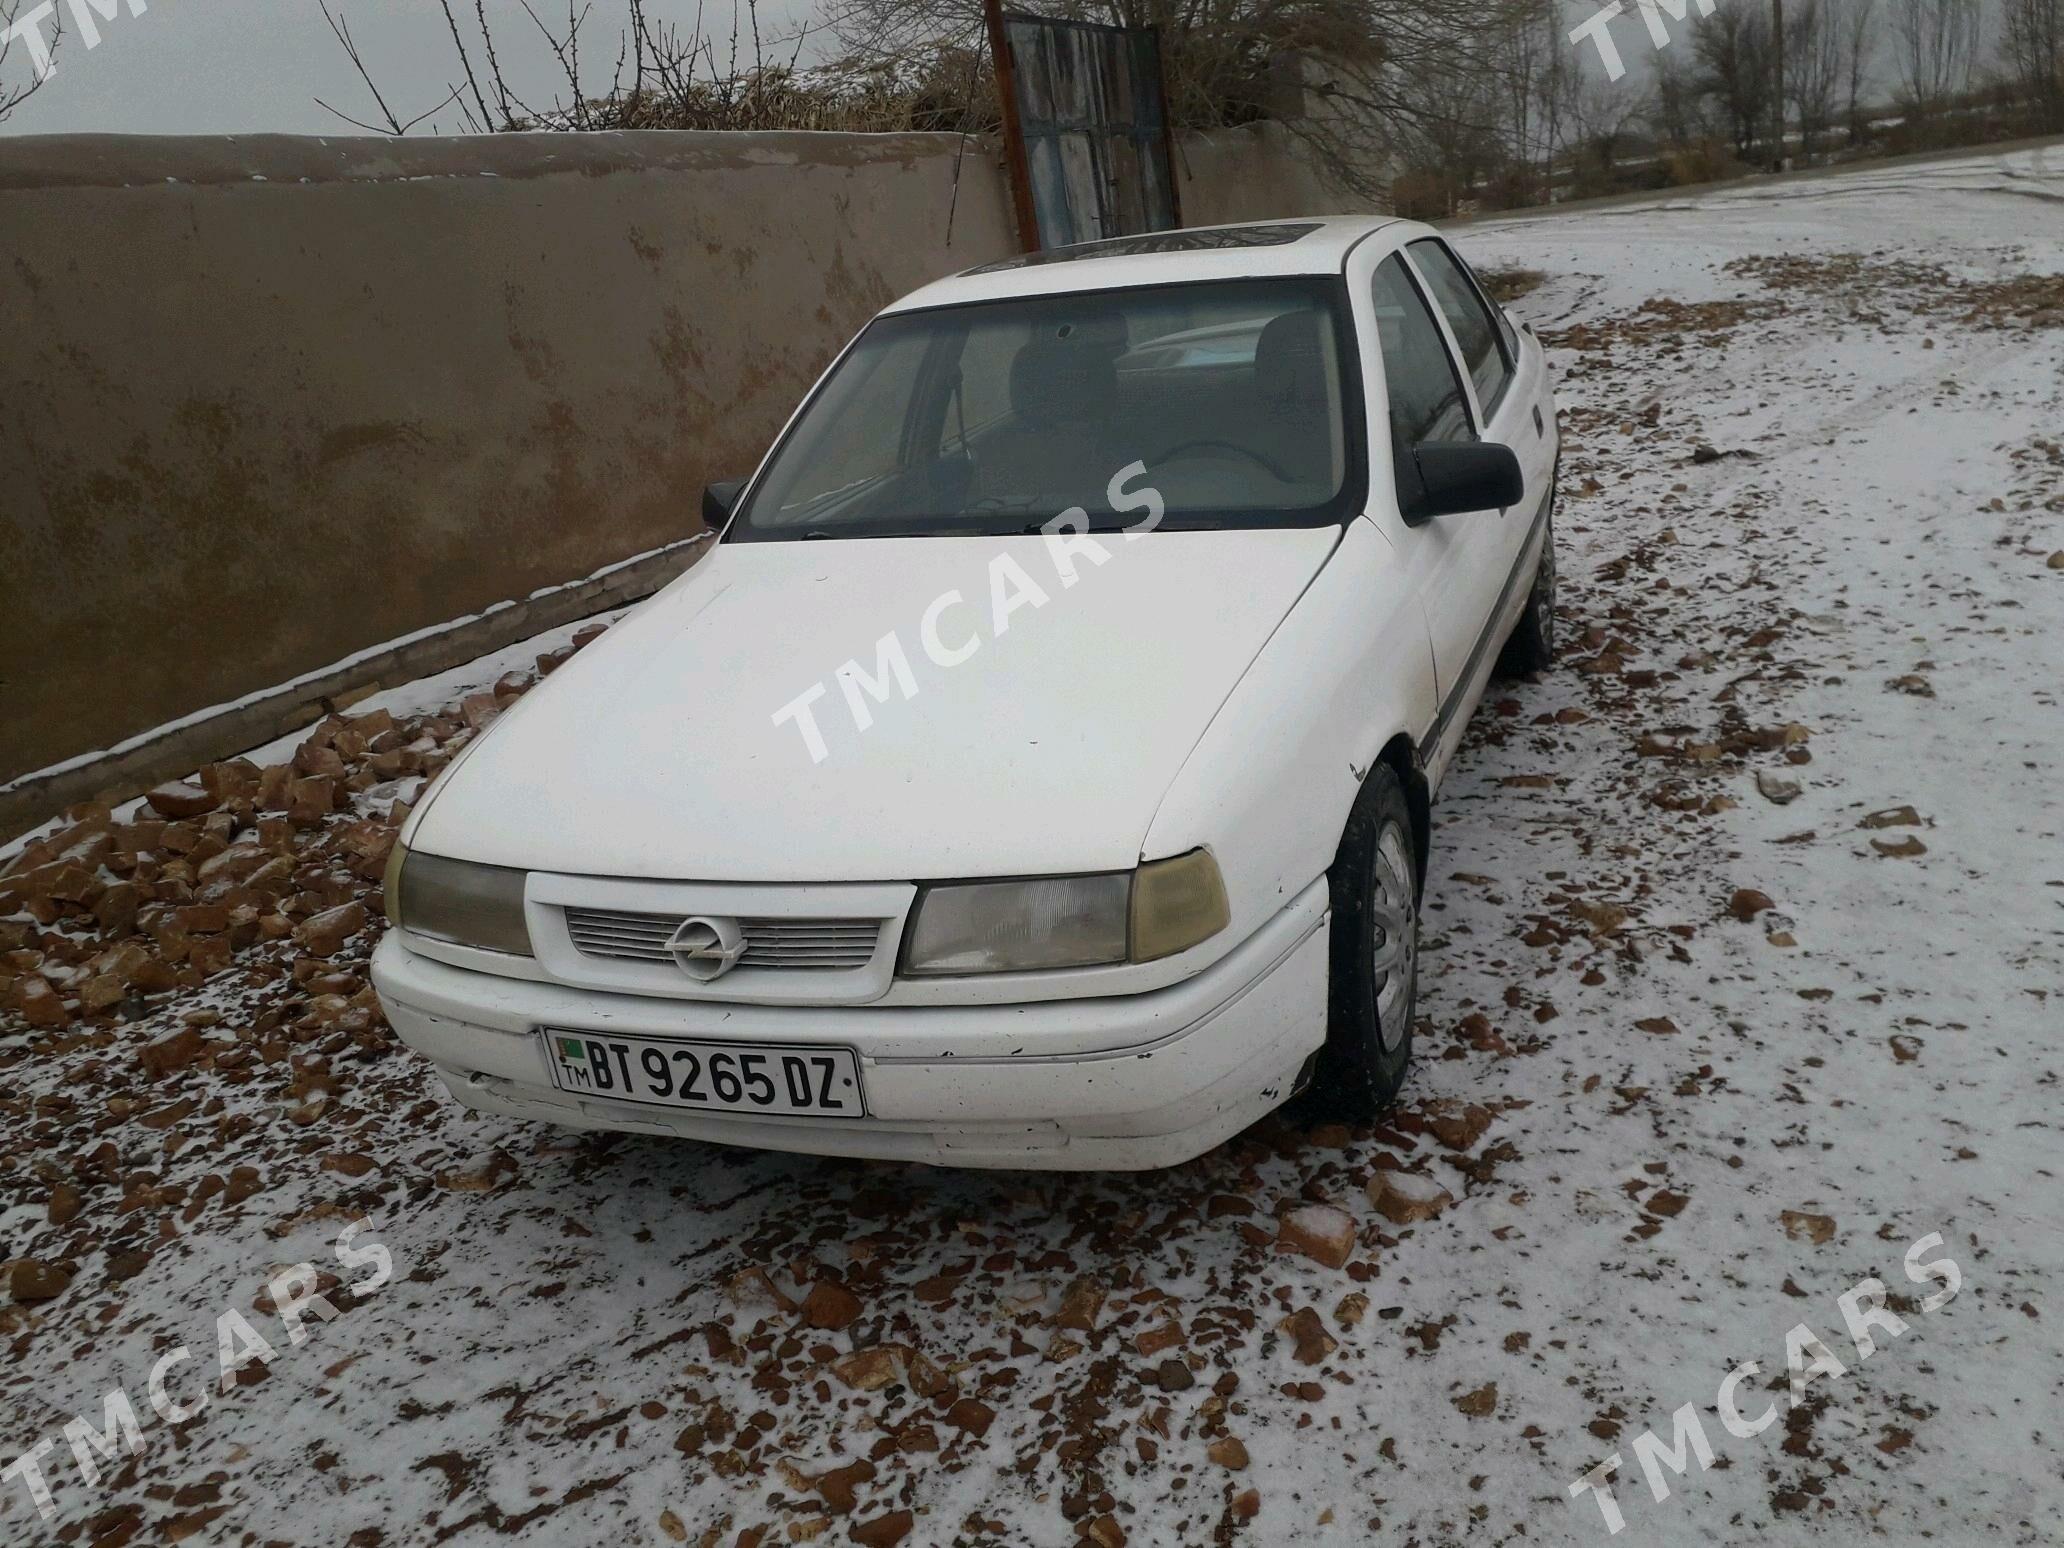 Opel Vectra 1993 - 25 000 TMT - Şabat etr. - img 3